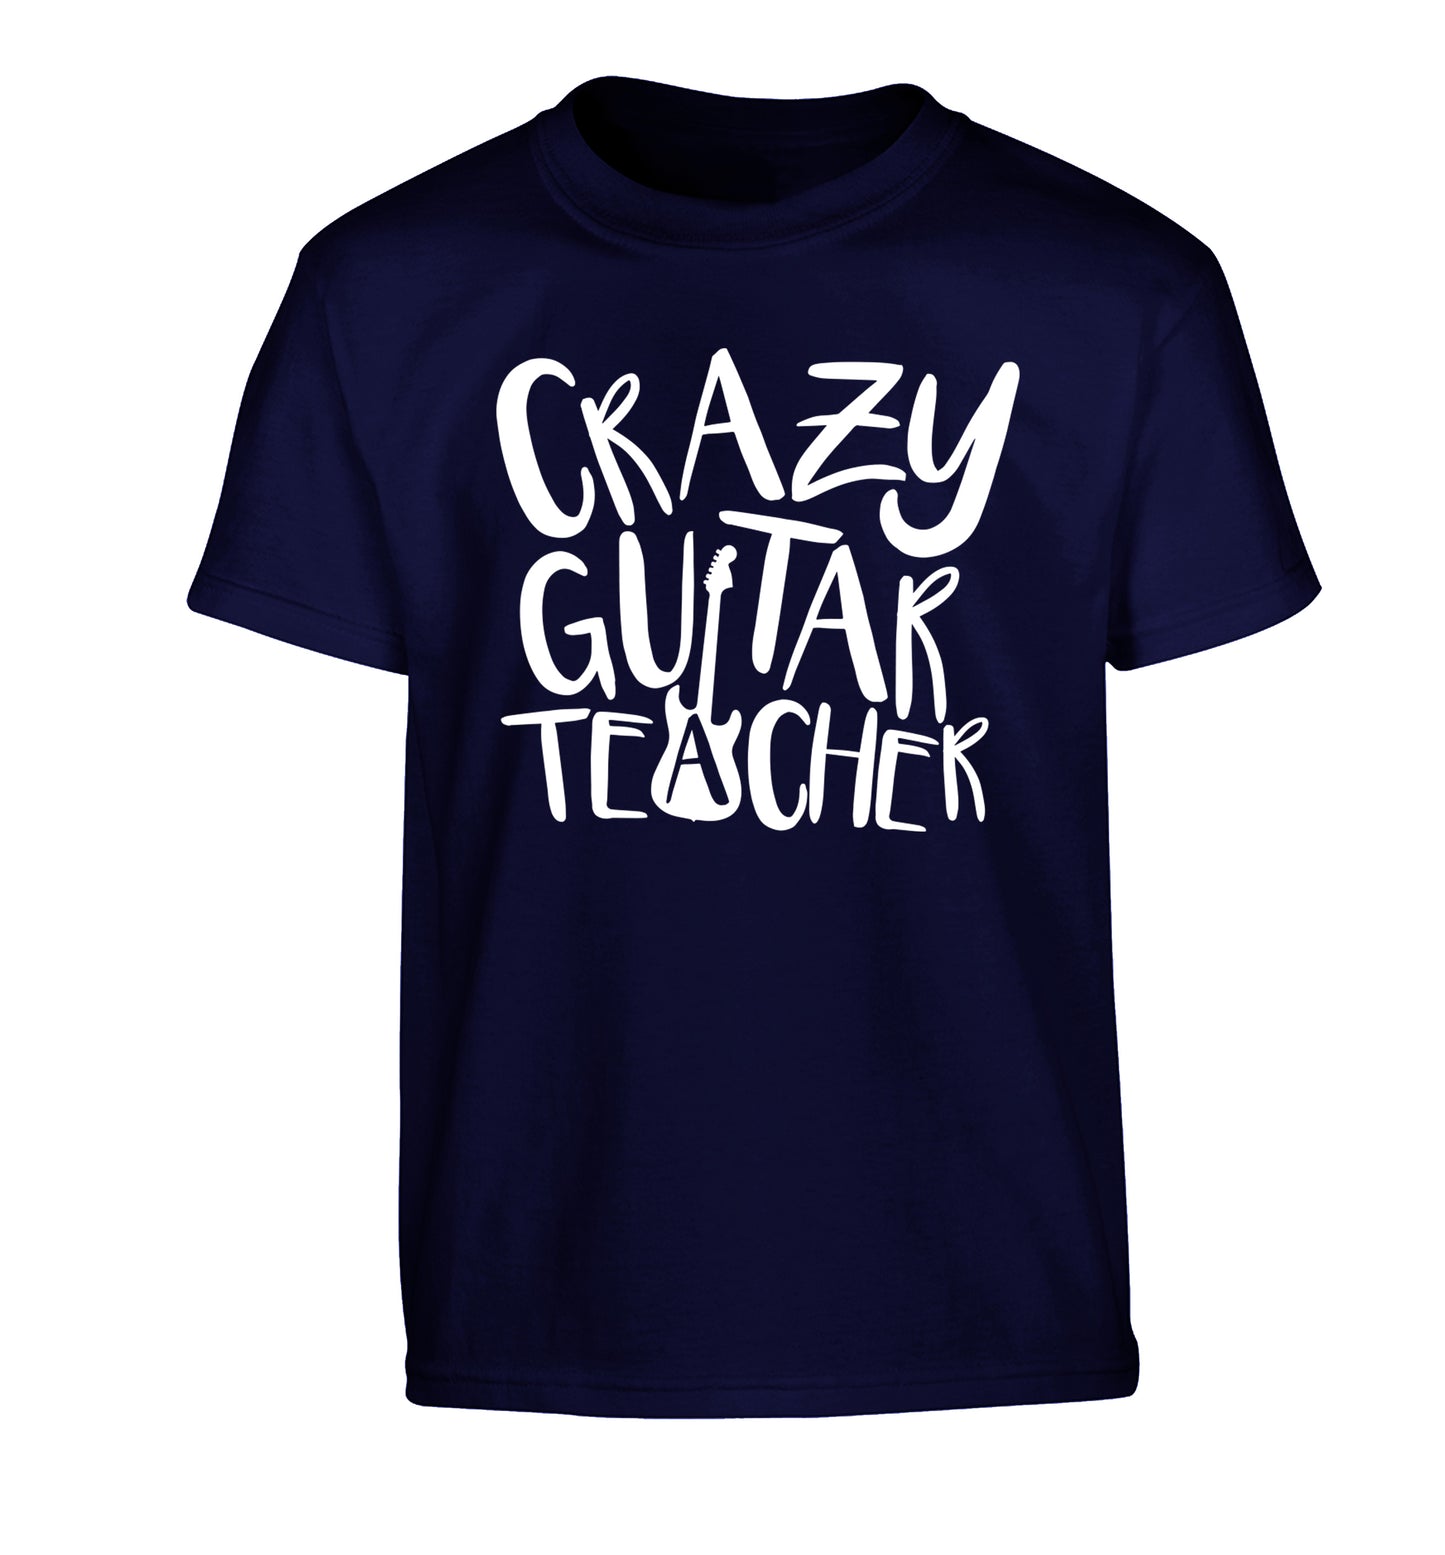 Crazy guitar teacher Children's navy Tshirt 12-13 Years